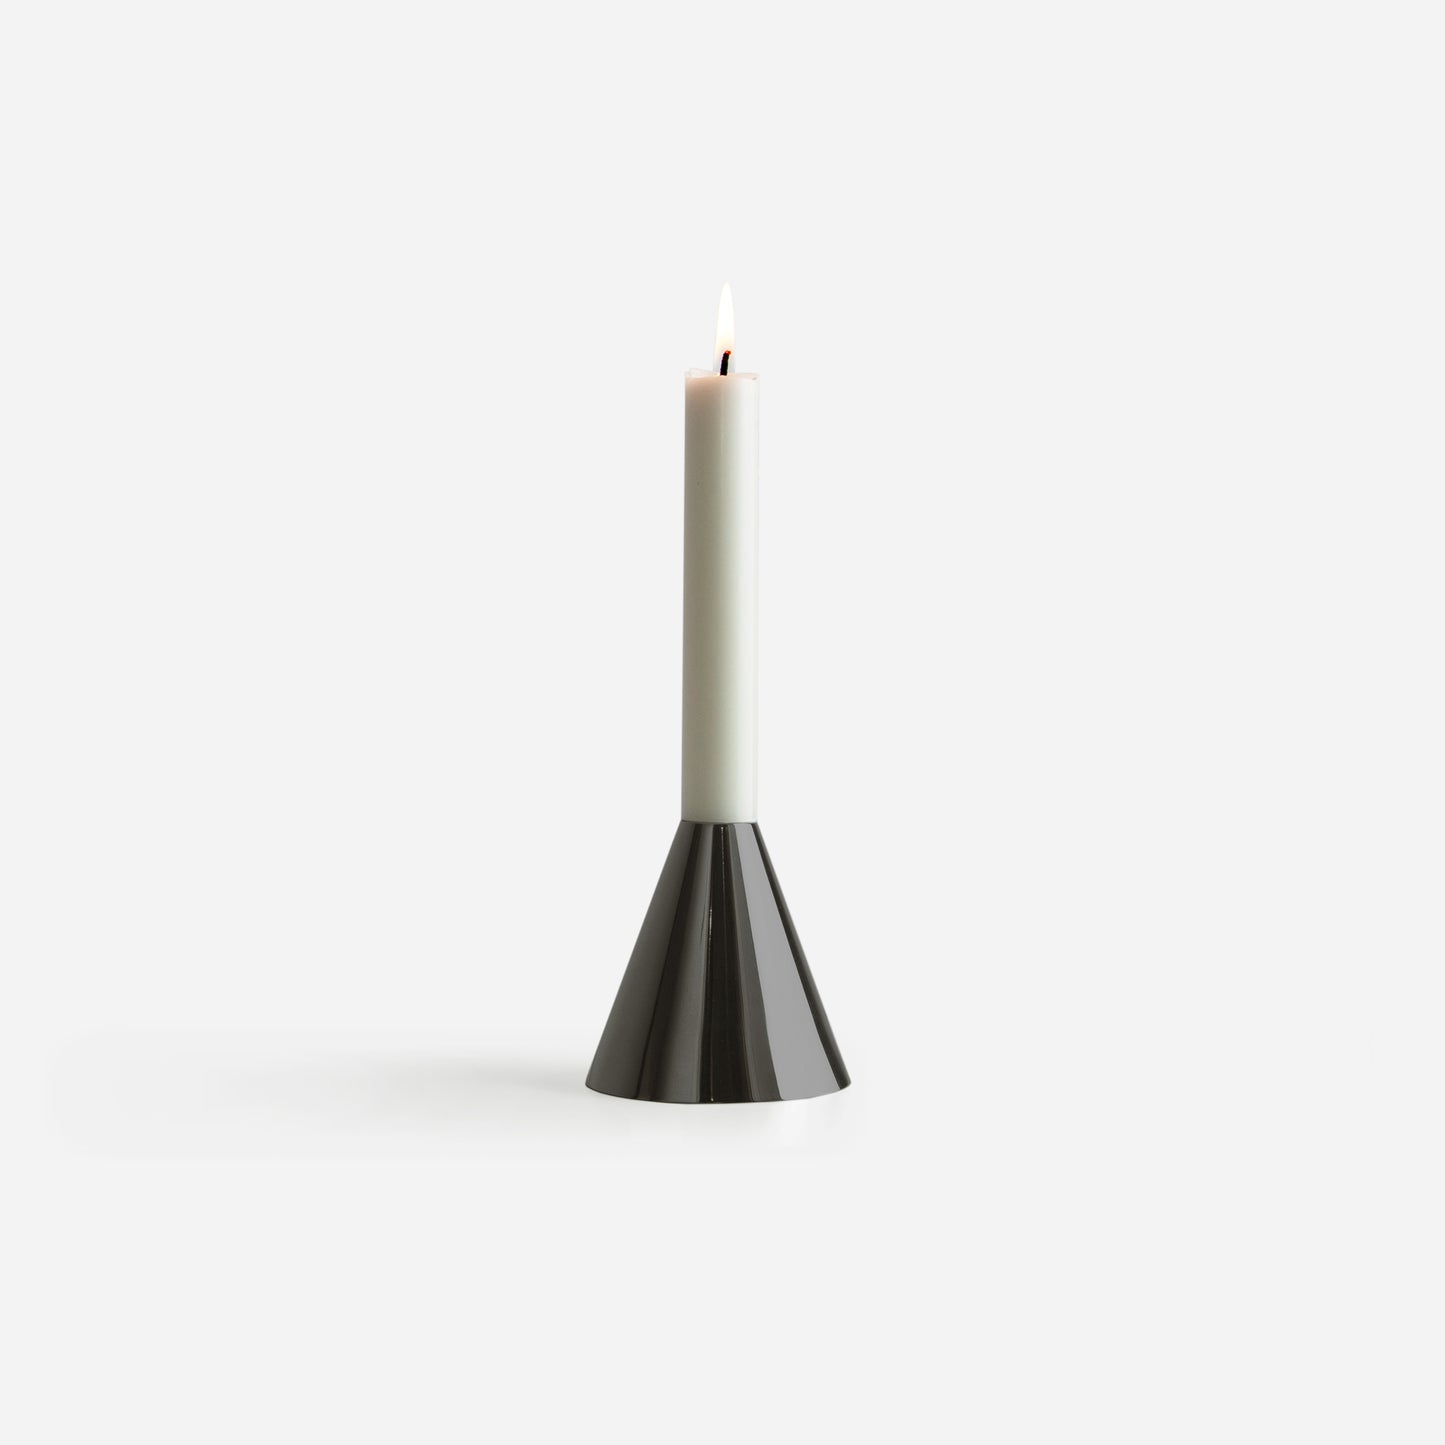 A Candleholder